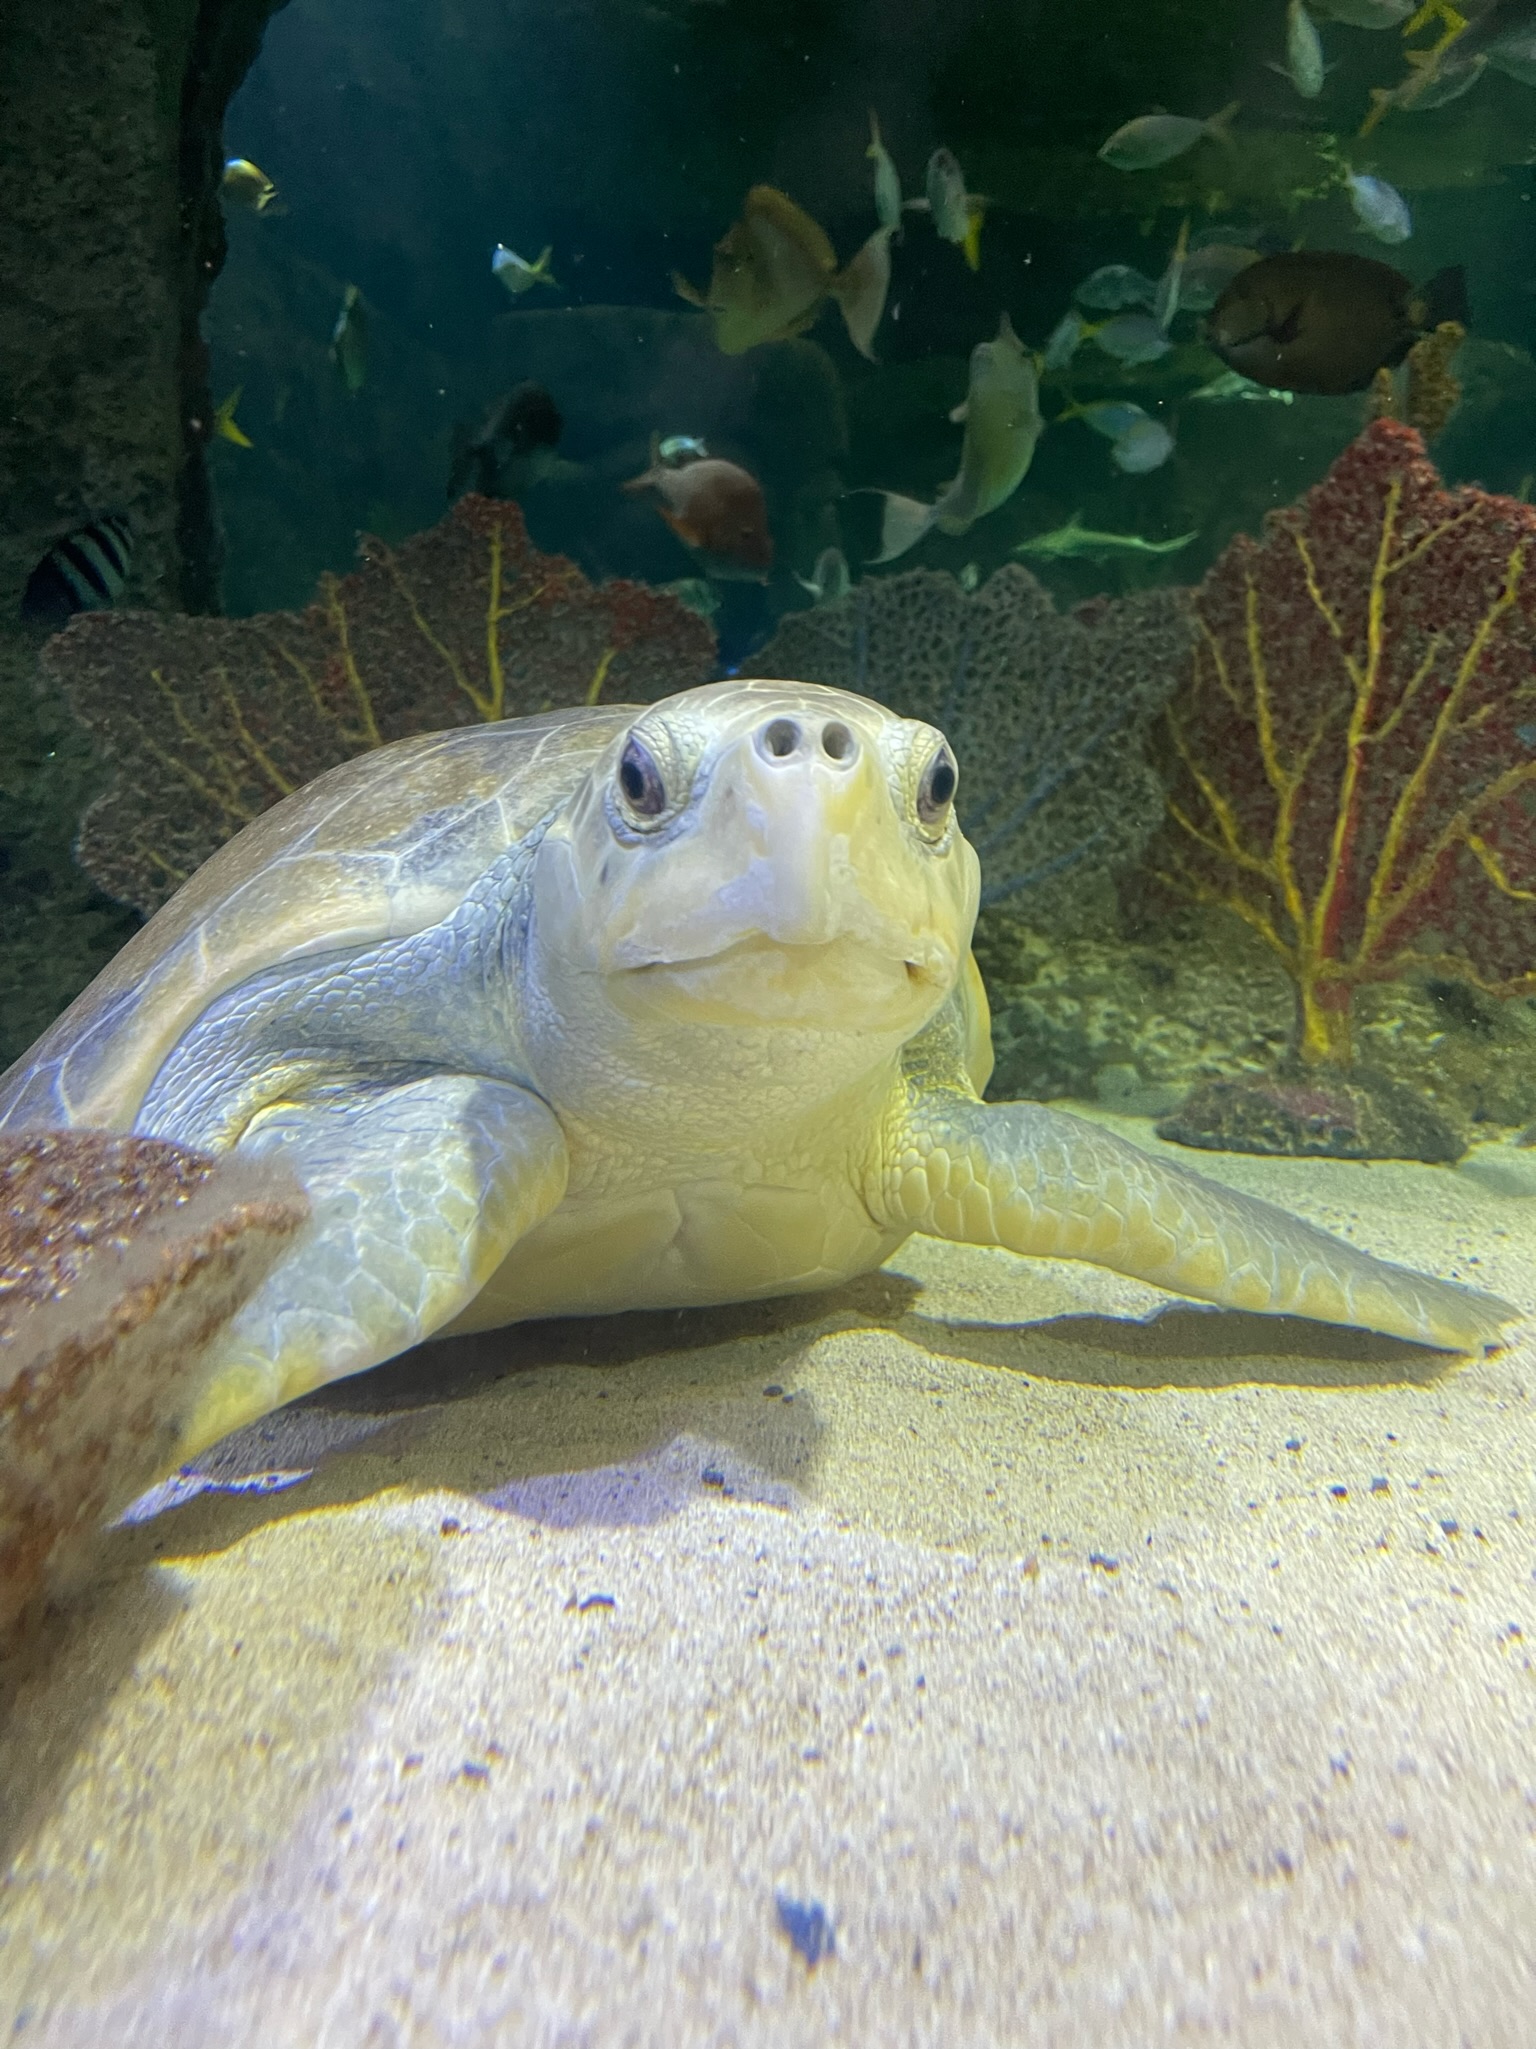 Meet Turtles at the Aquarium